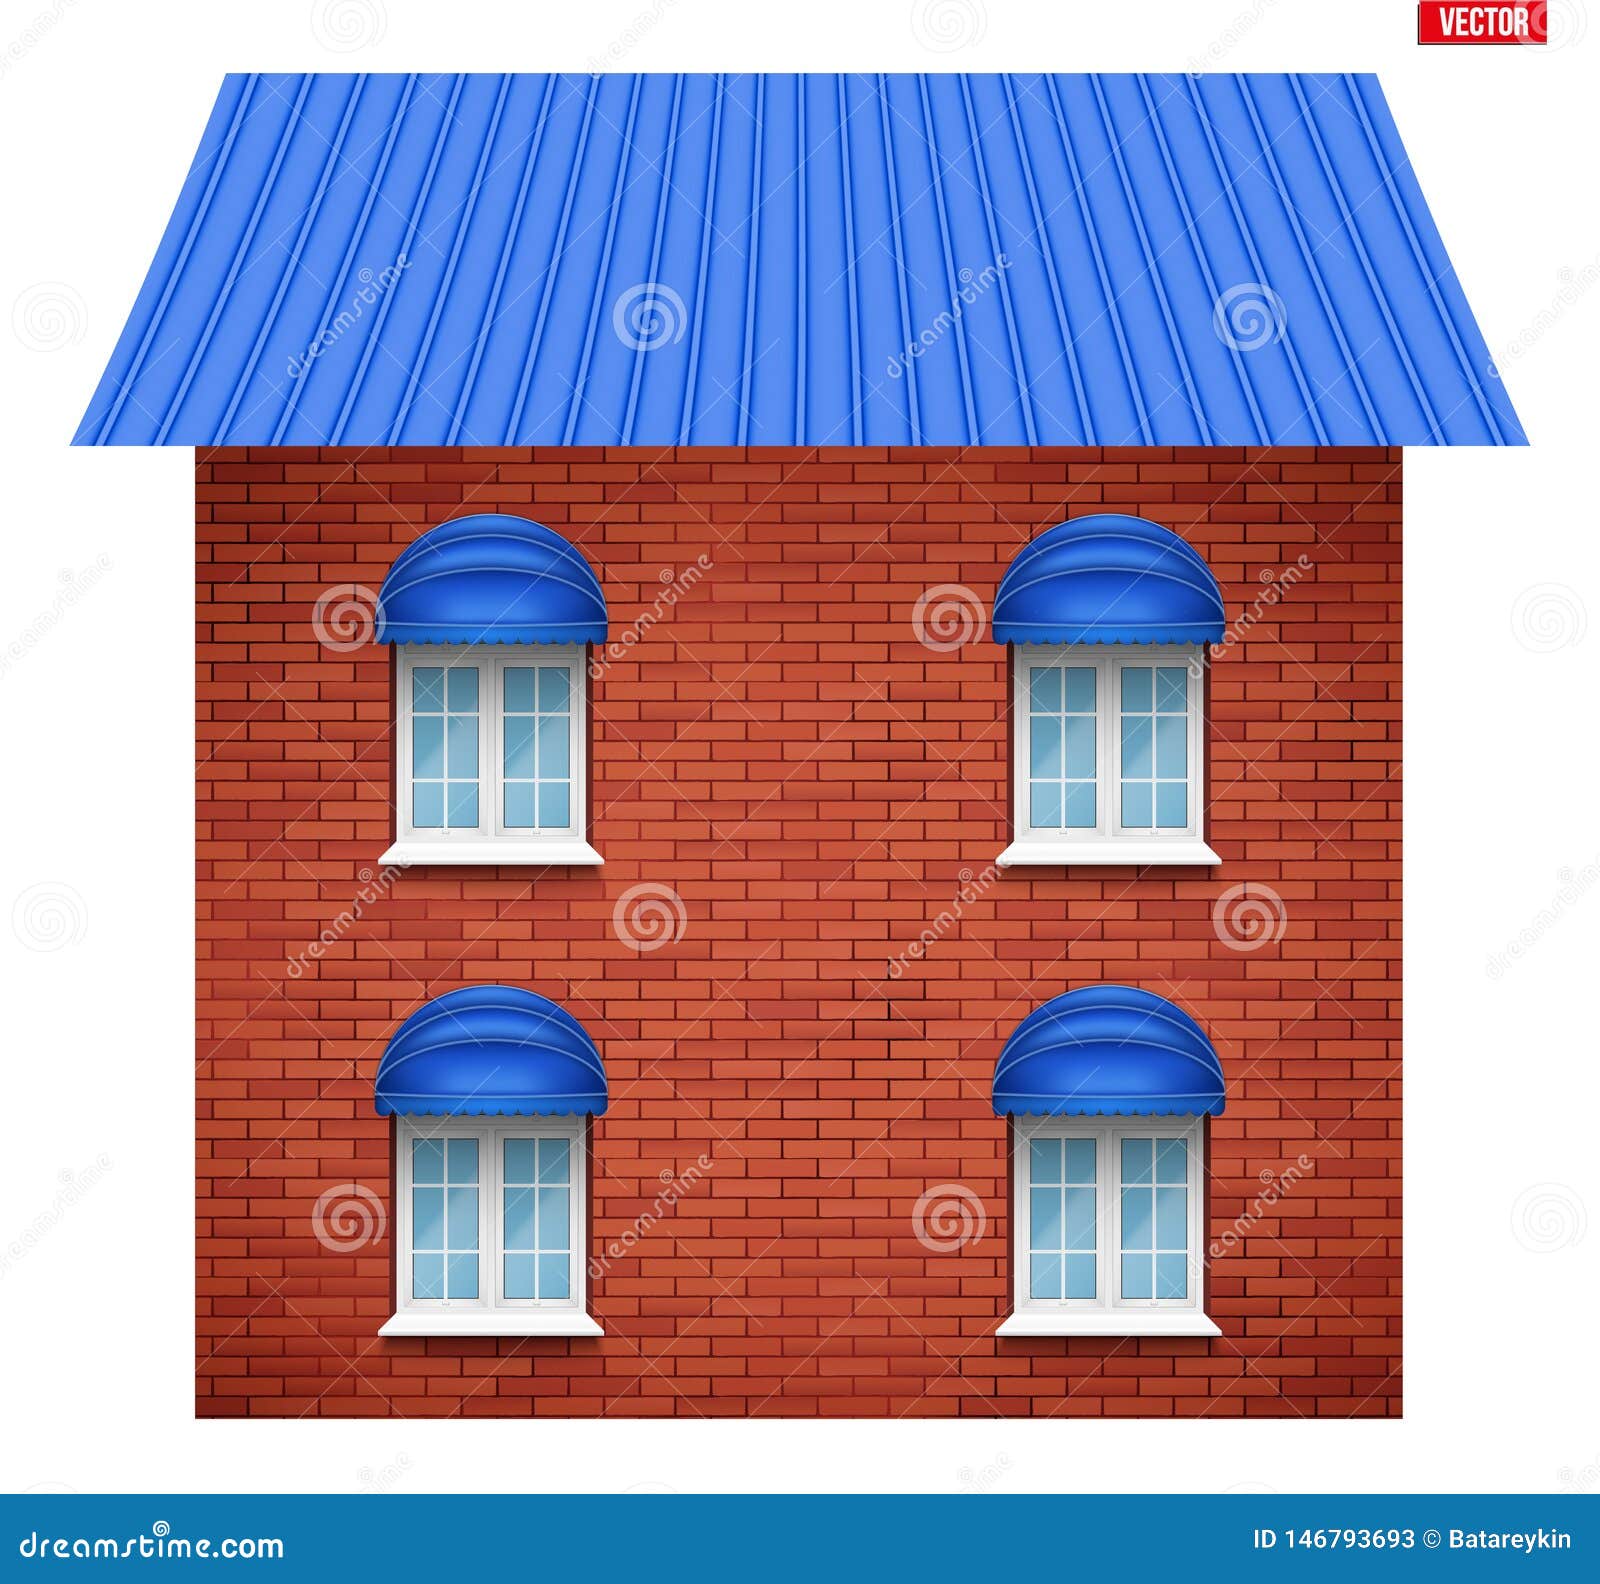 house facade and windows